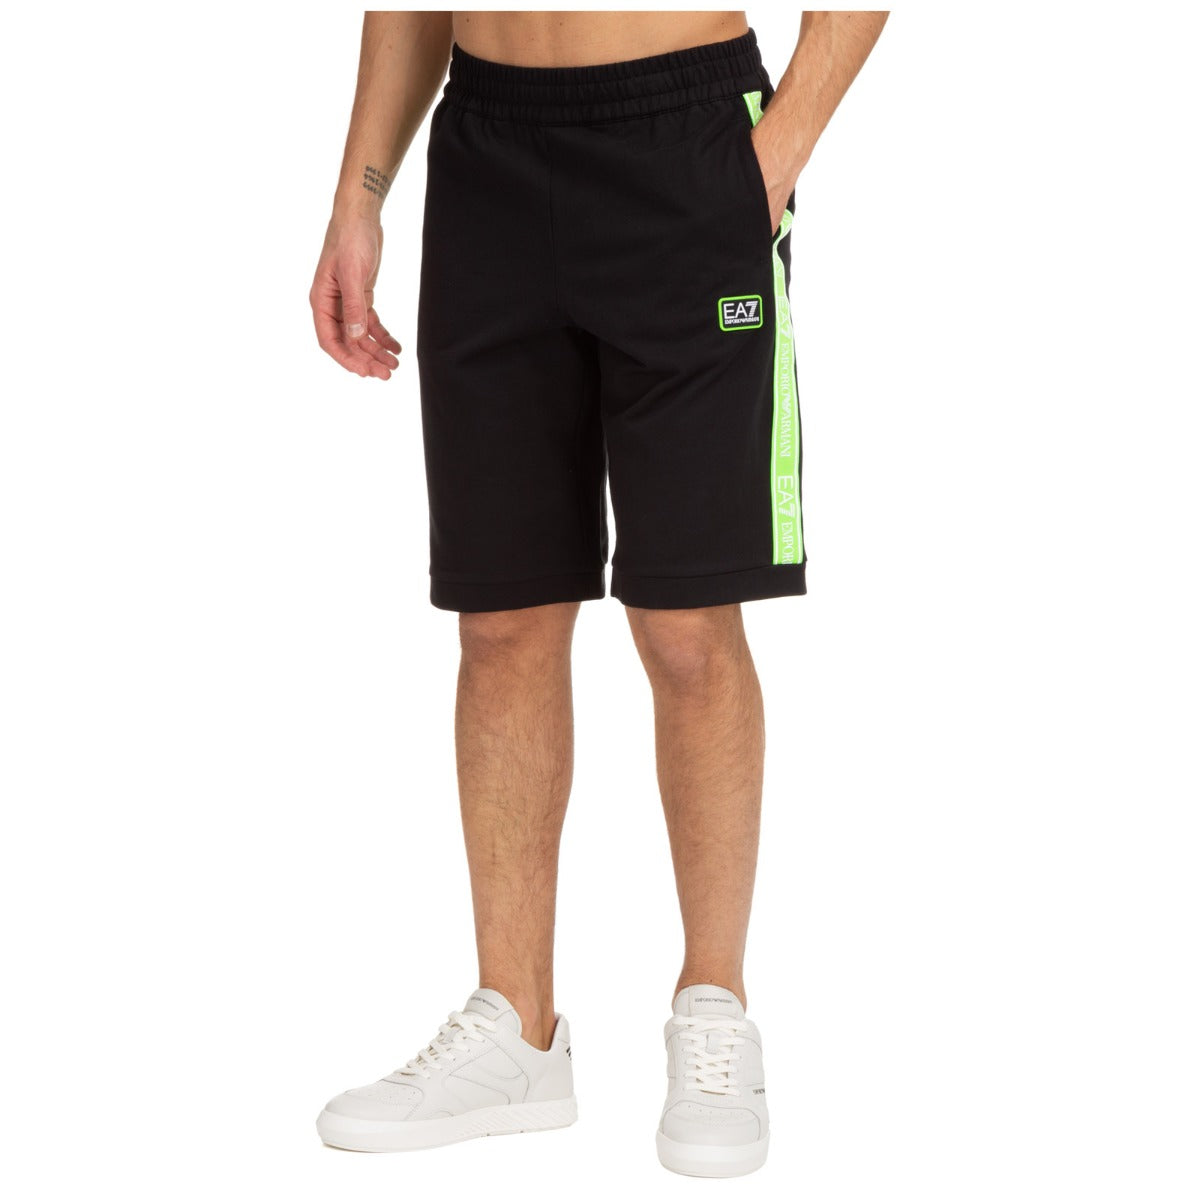 Pantalones cortos deportivos Emporio Armani EA7 - Negro/Verde